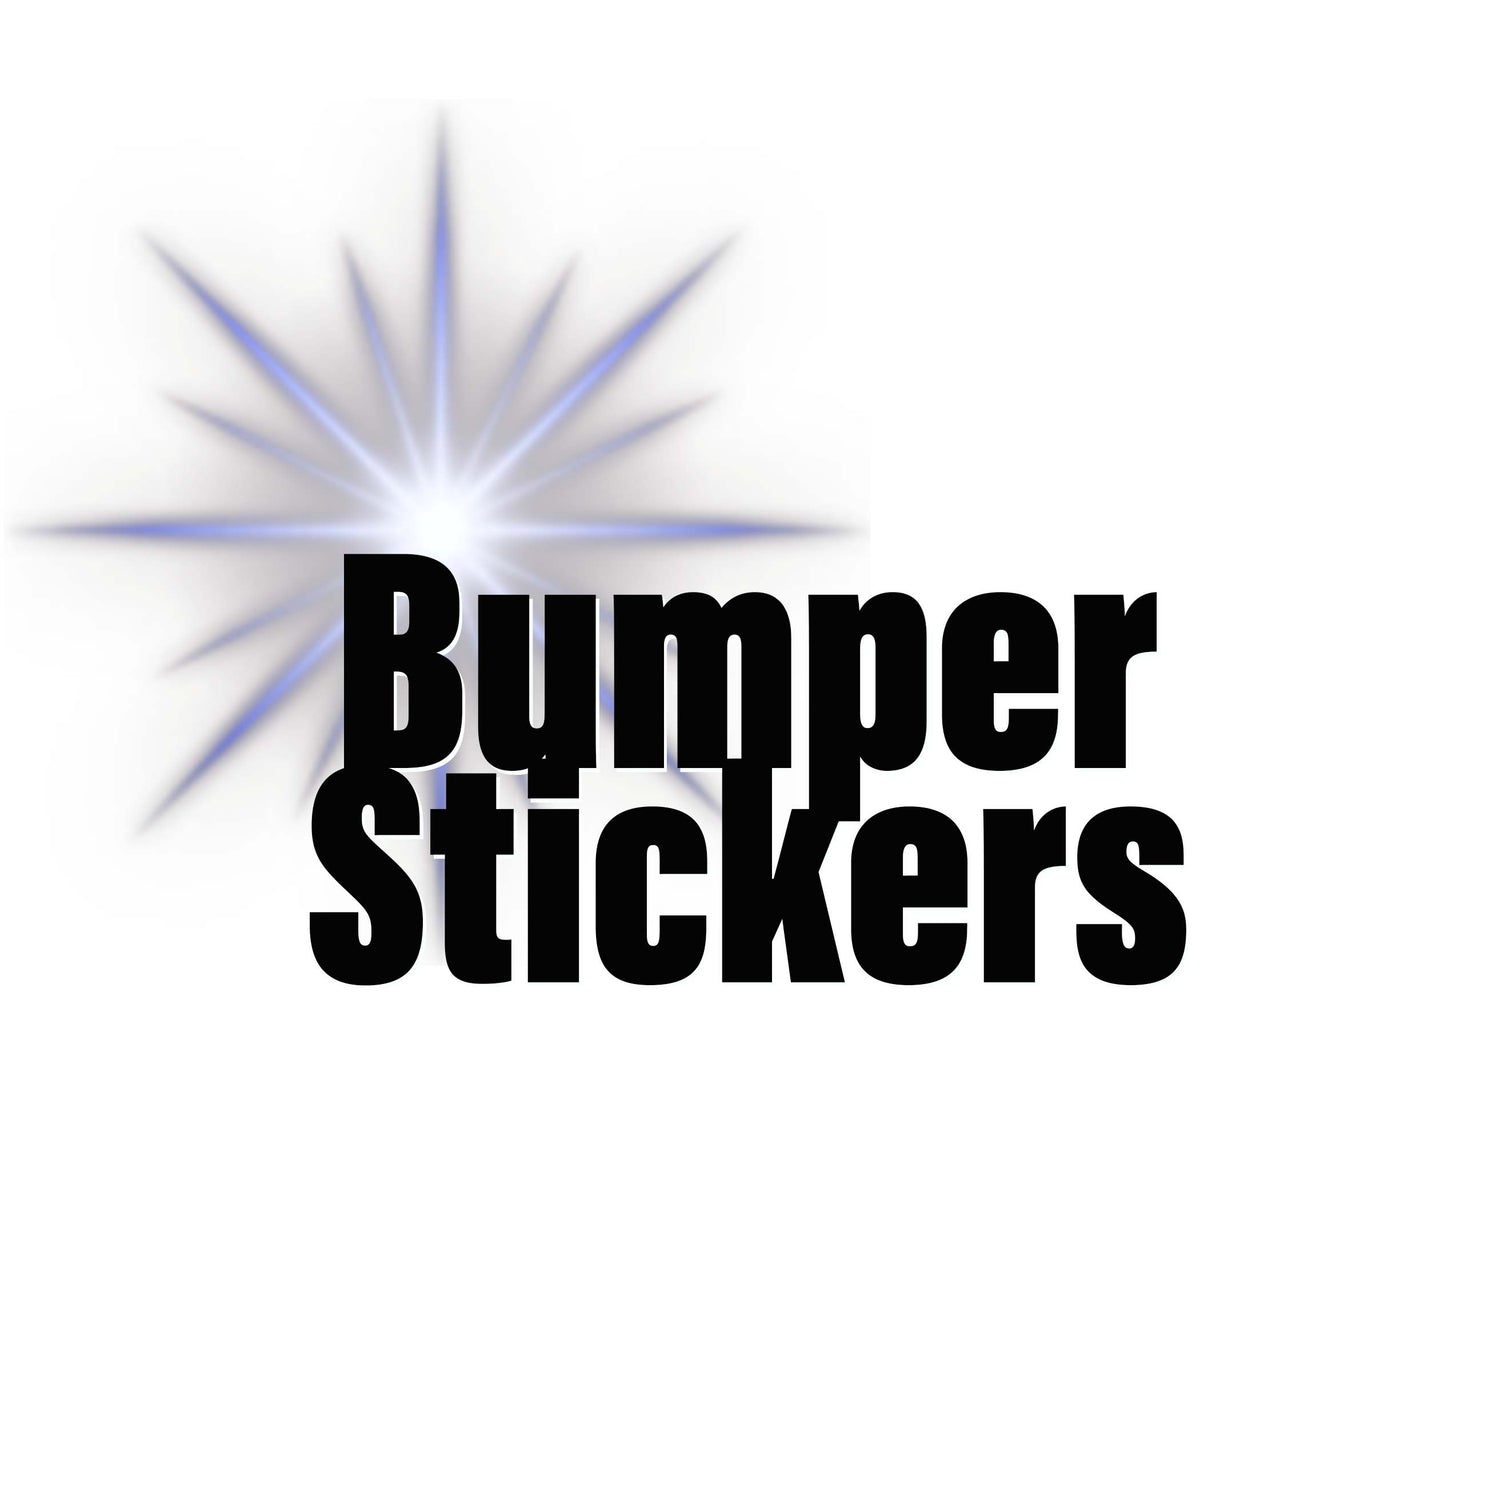 All Bumper Stickers